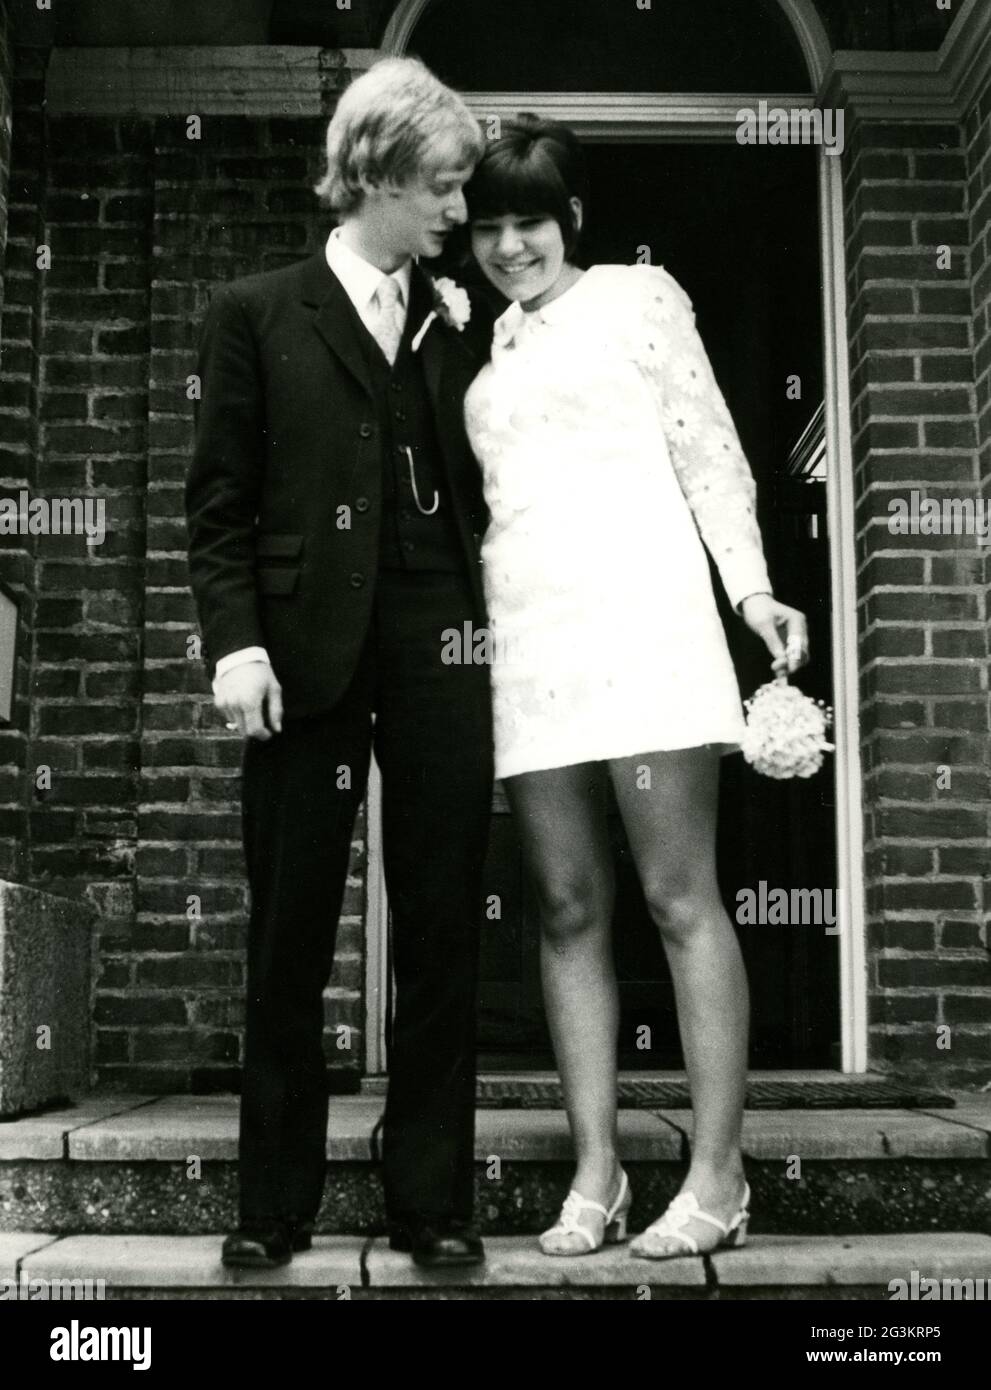 Personen, Hochzeit, Brautpaar nach der Trauung, 70er Jahre, ZUSÄTZLICHE-RIGHTS-CLEARANCE-INFO-NOT-AVAILABLE Stockfoto